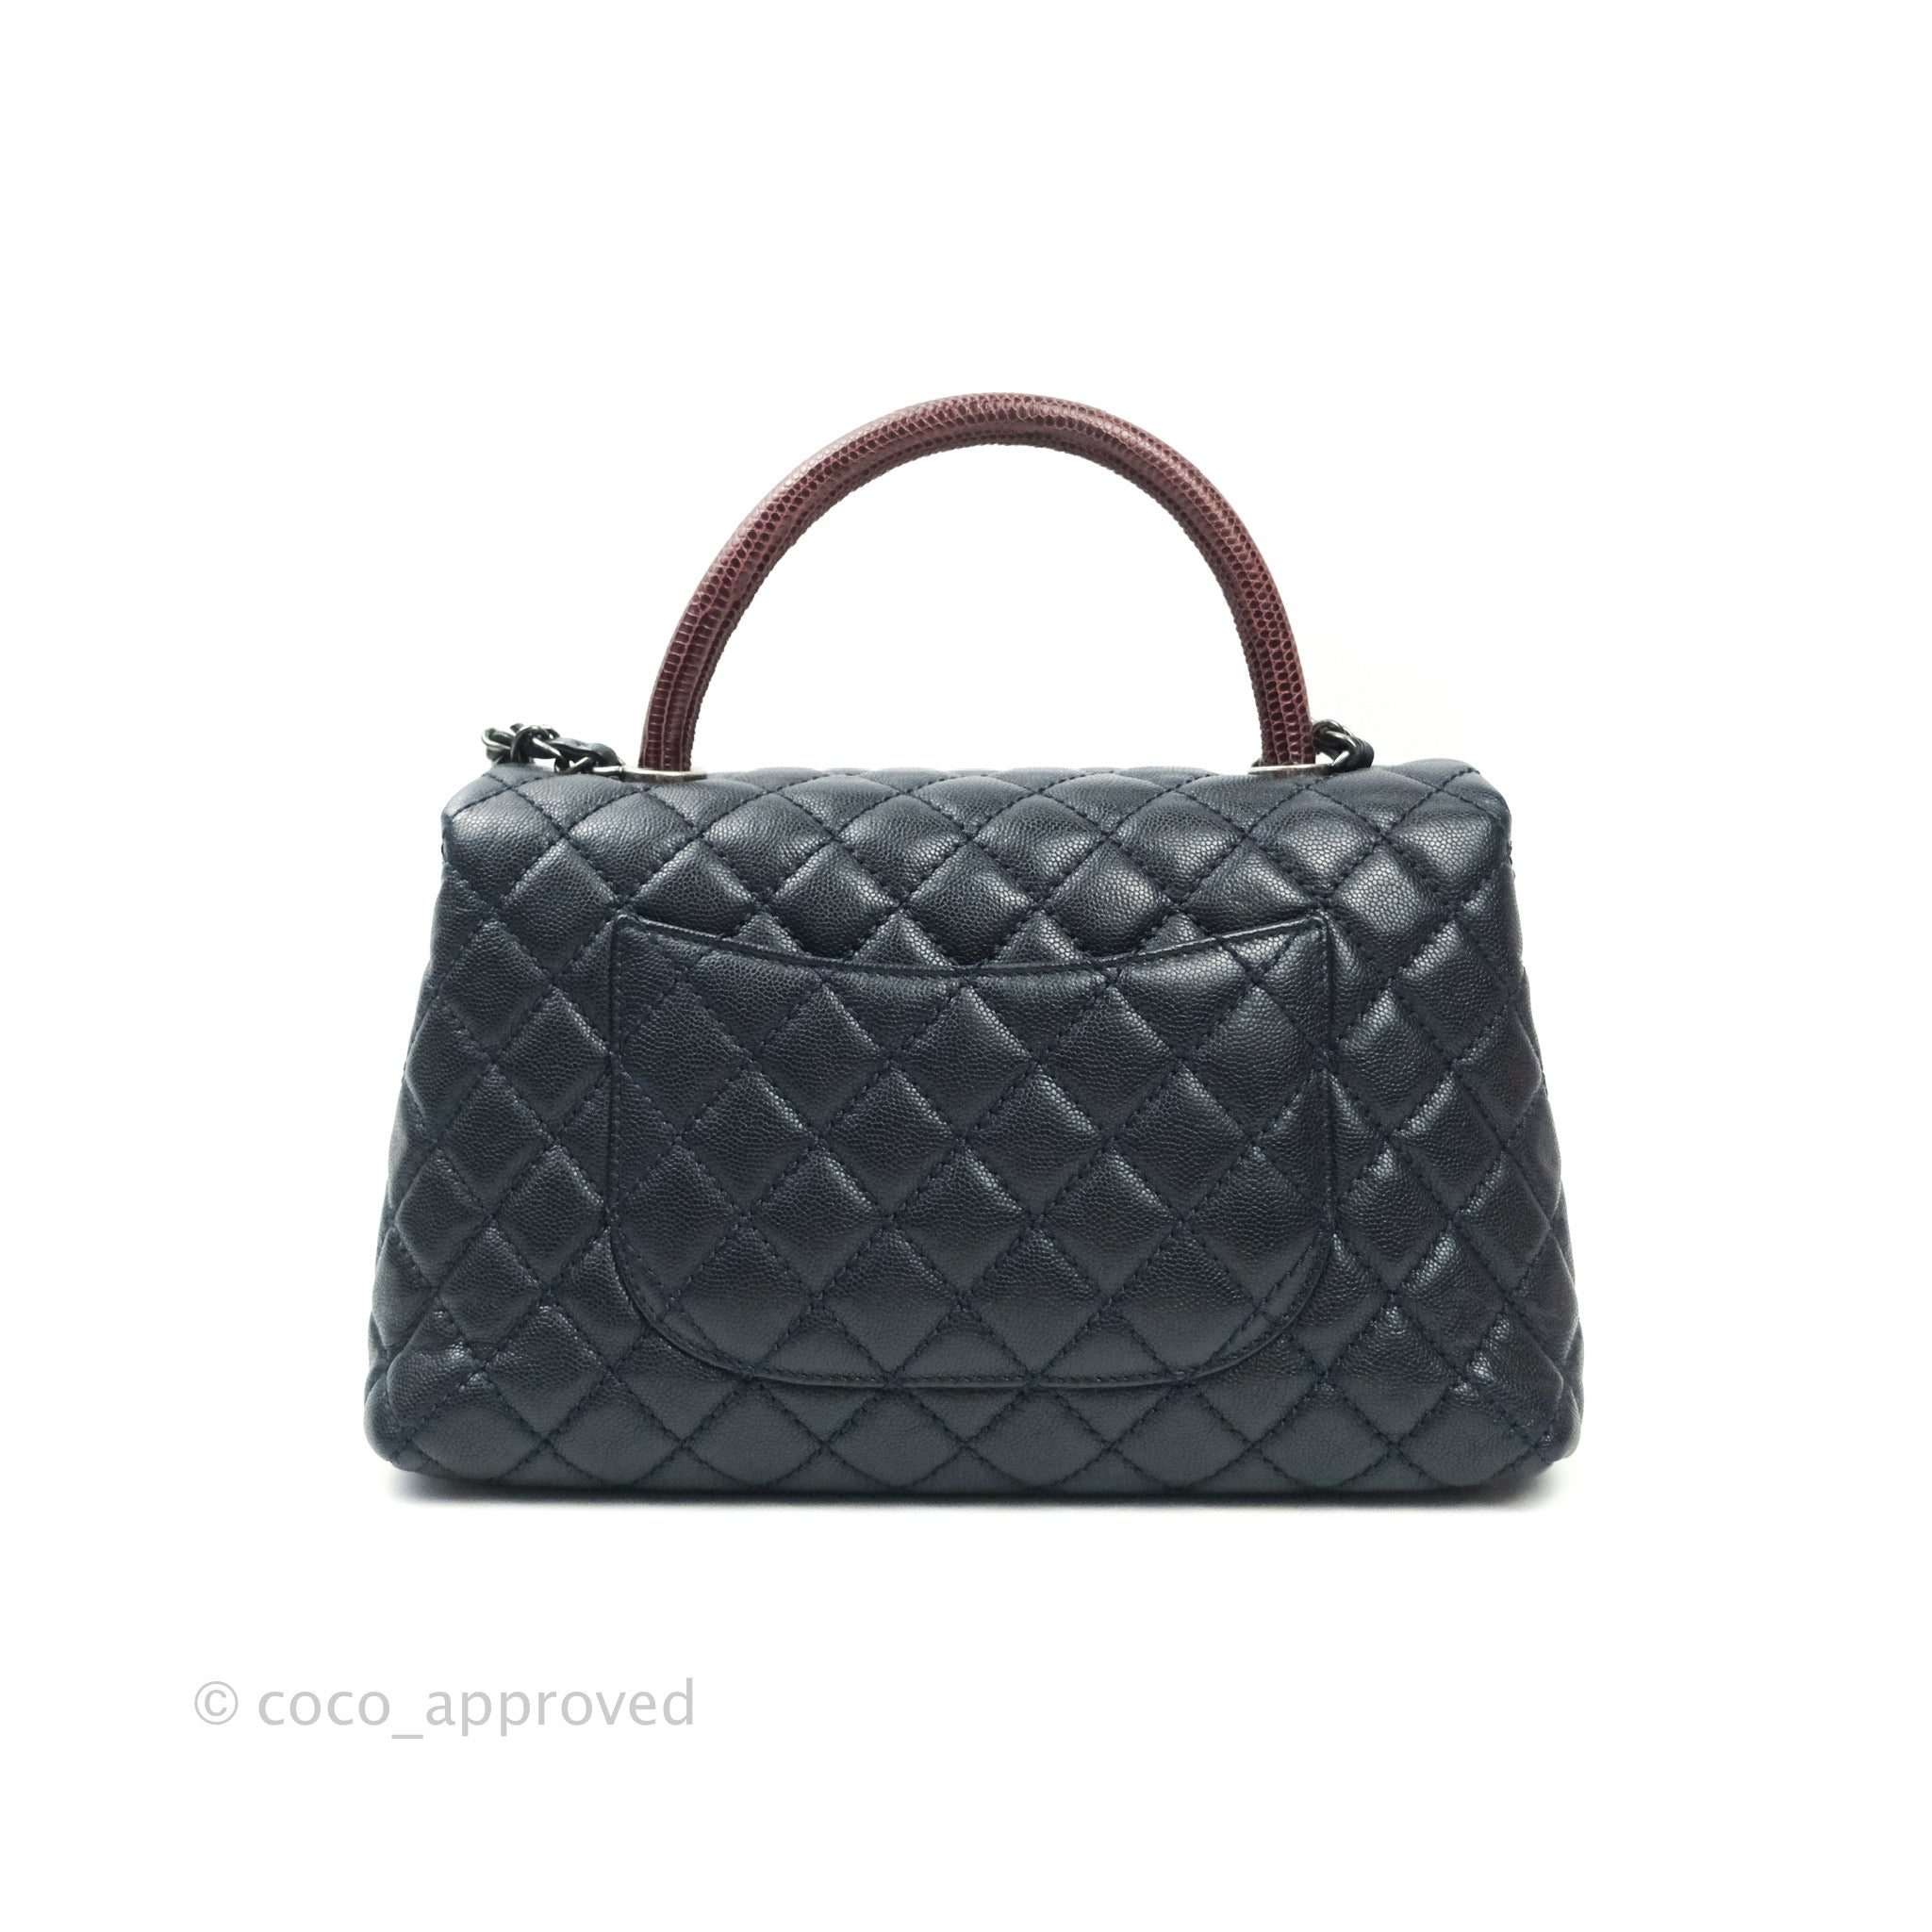 Chanel 2018 Elaphe Caviar Coco Handle Bag w/ Tags - Handbags